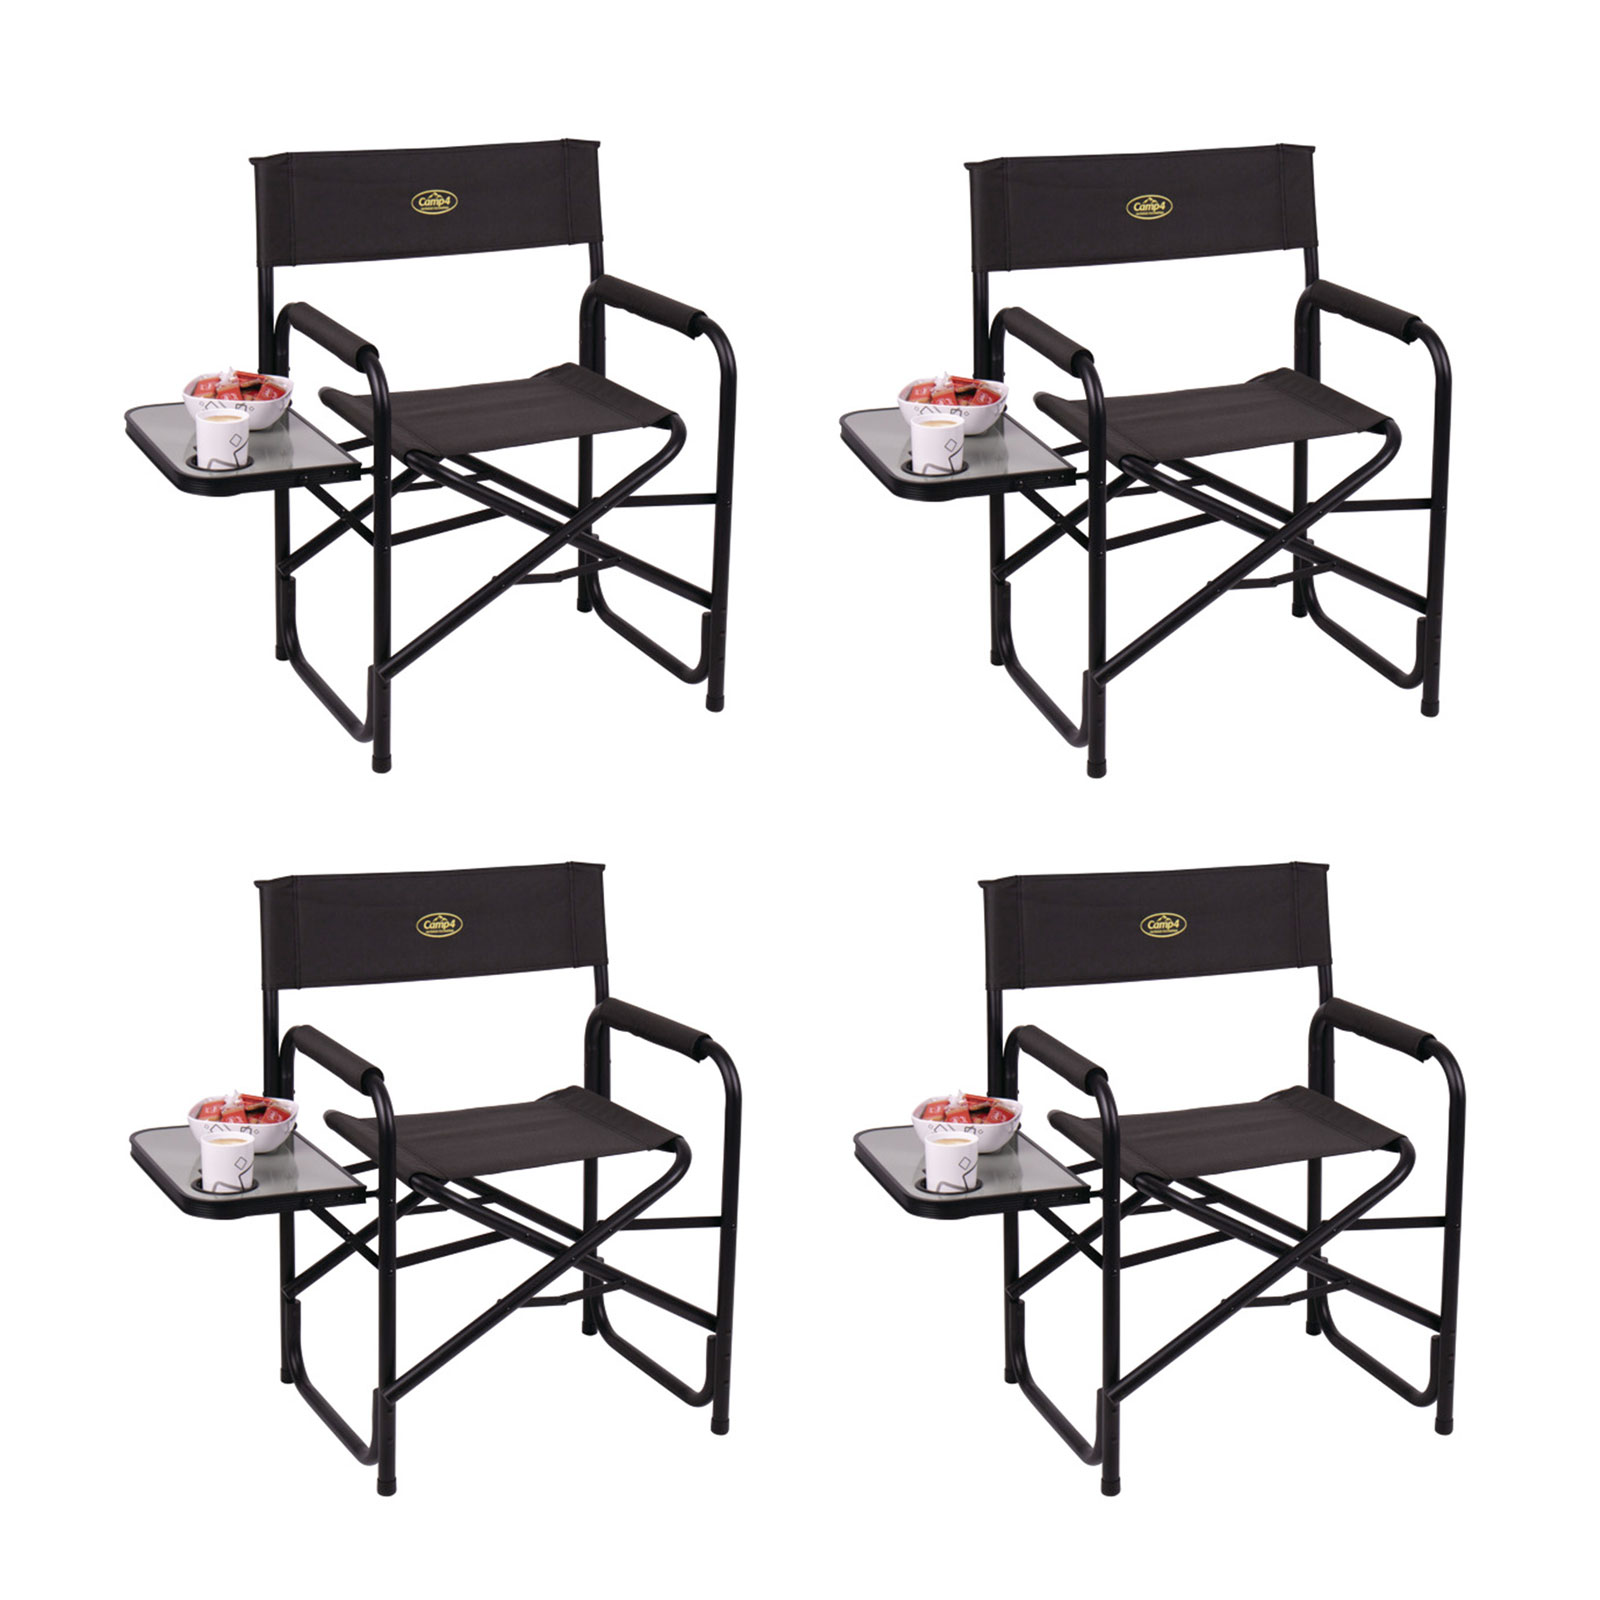 4x Campingstuhl klappbar, schwarz, Regiestuhl mit Seitentisch und Getränkehalter